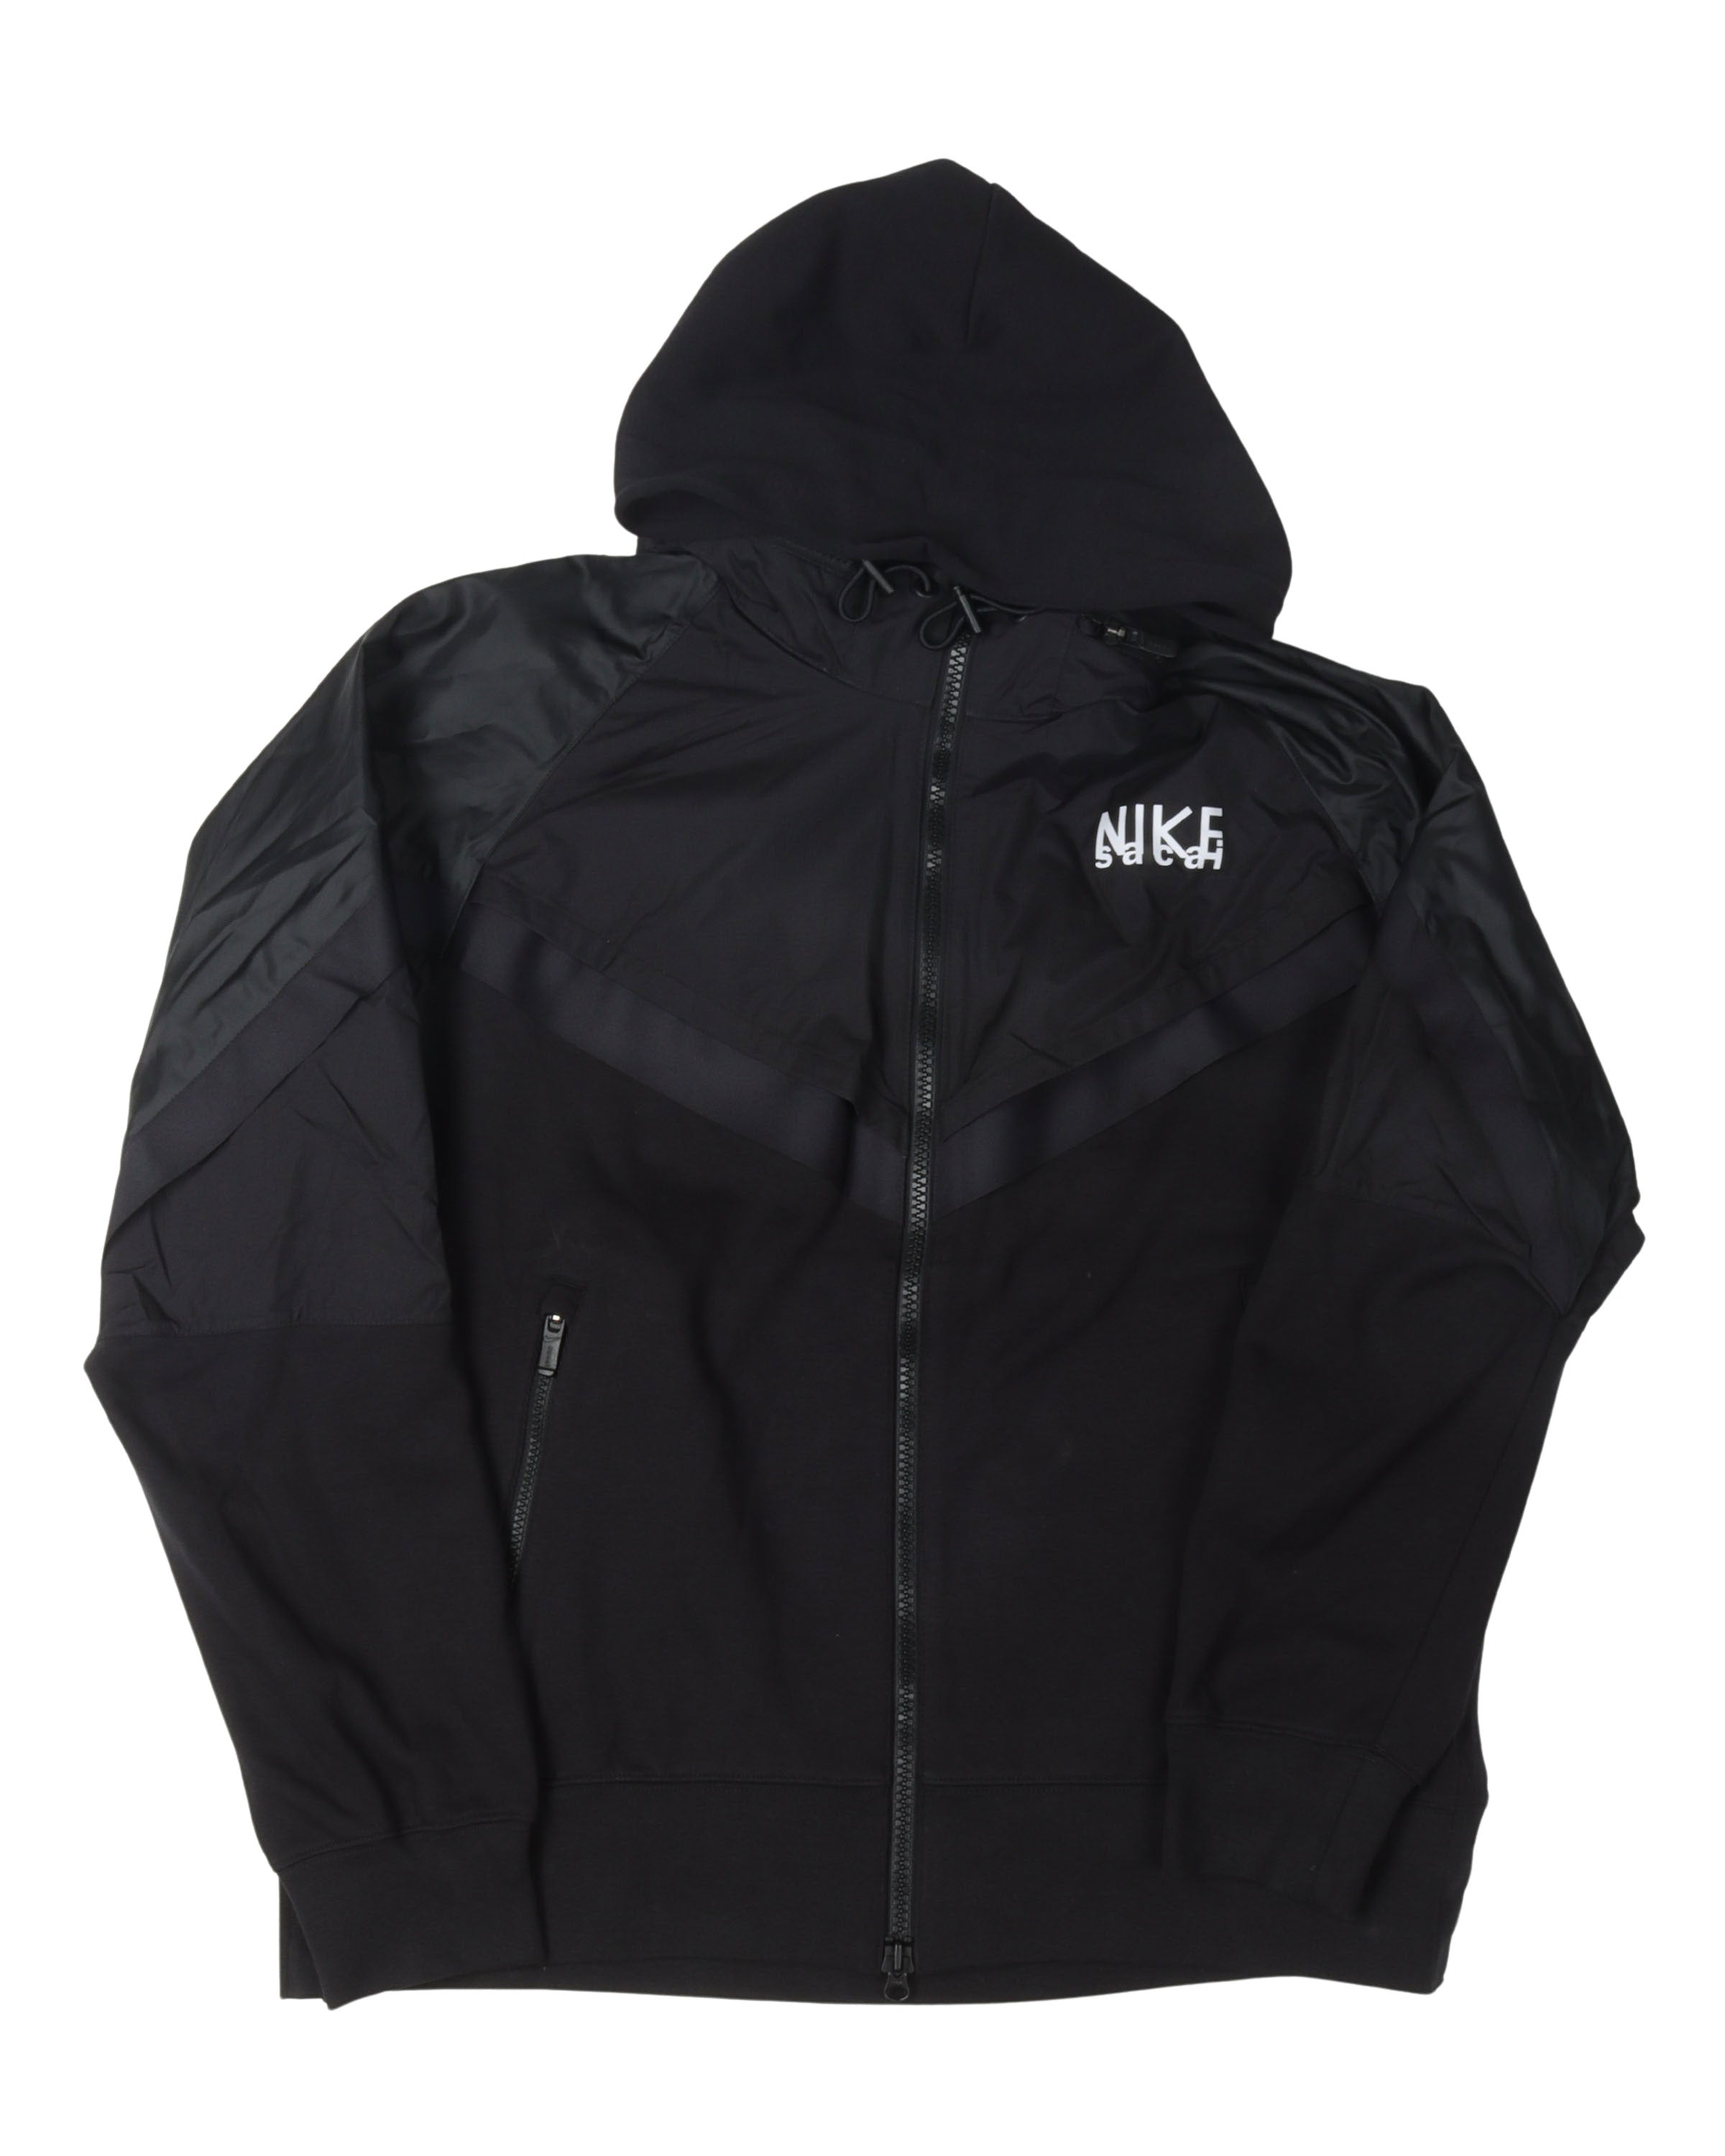 Nike Hybrid Hooded Jacket